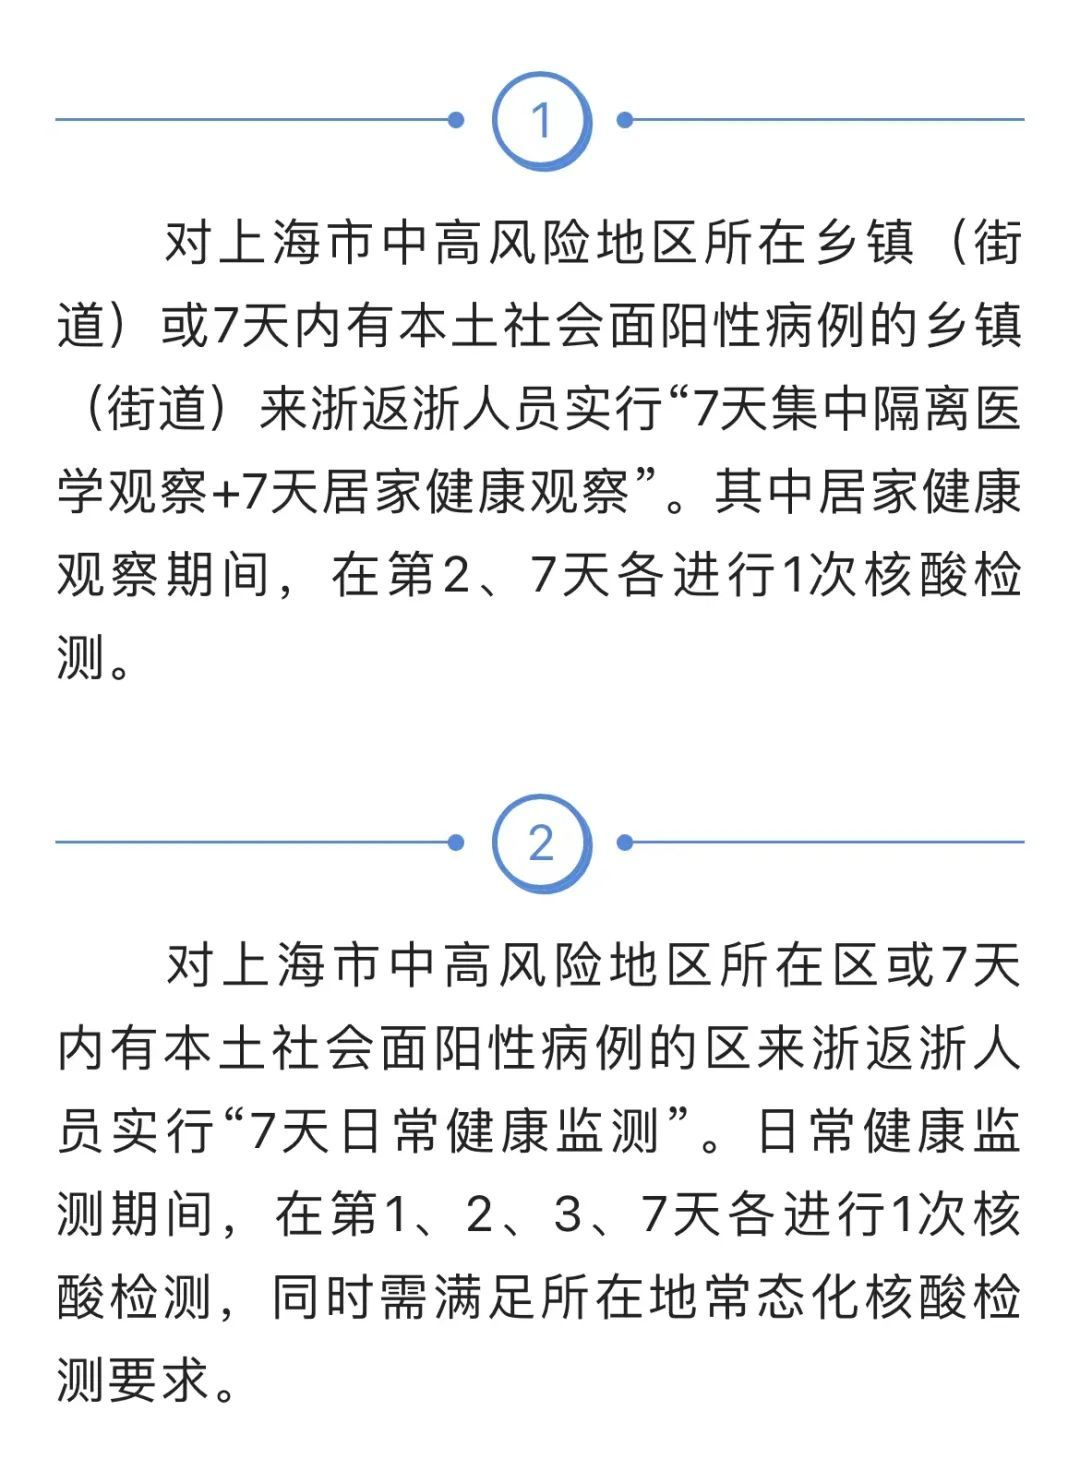 上海去浙江不再一刀切“7+7”！其他省市政策有变吗？最新汇总